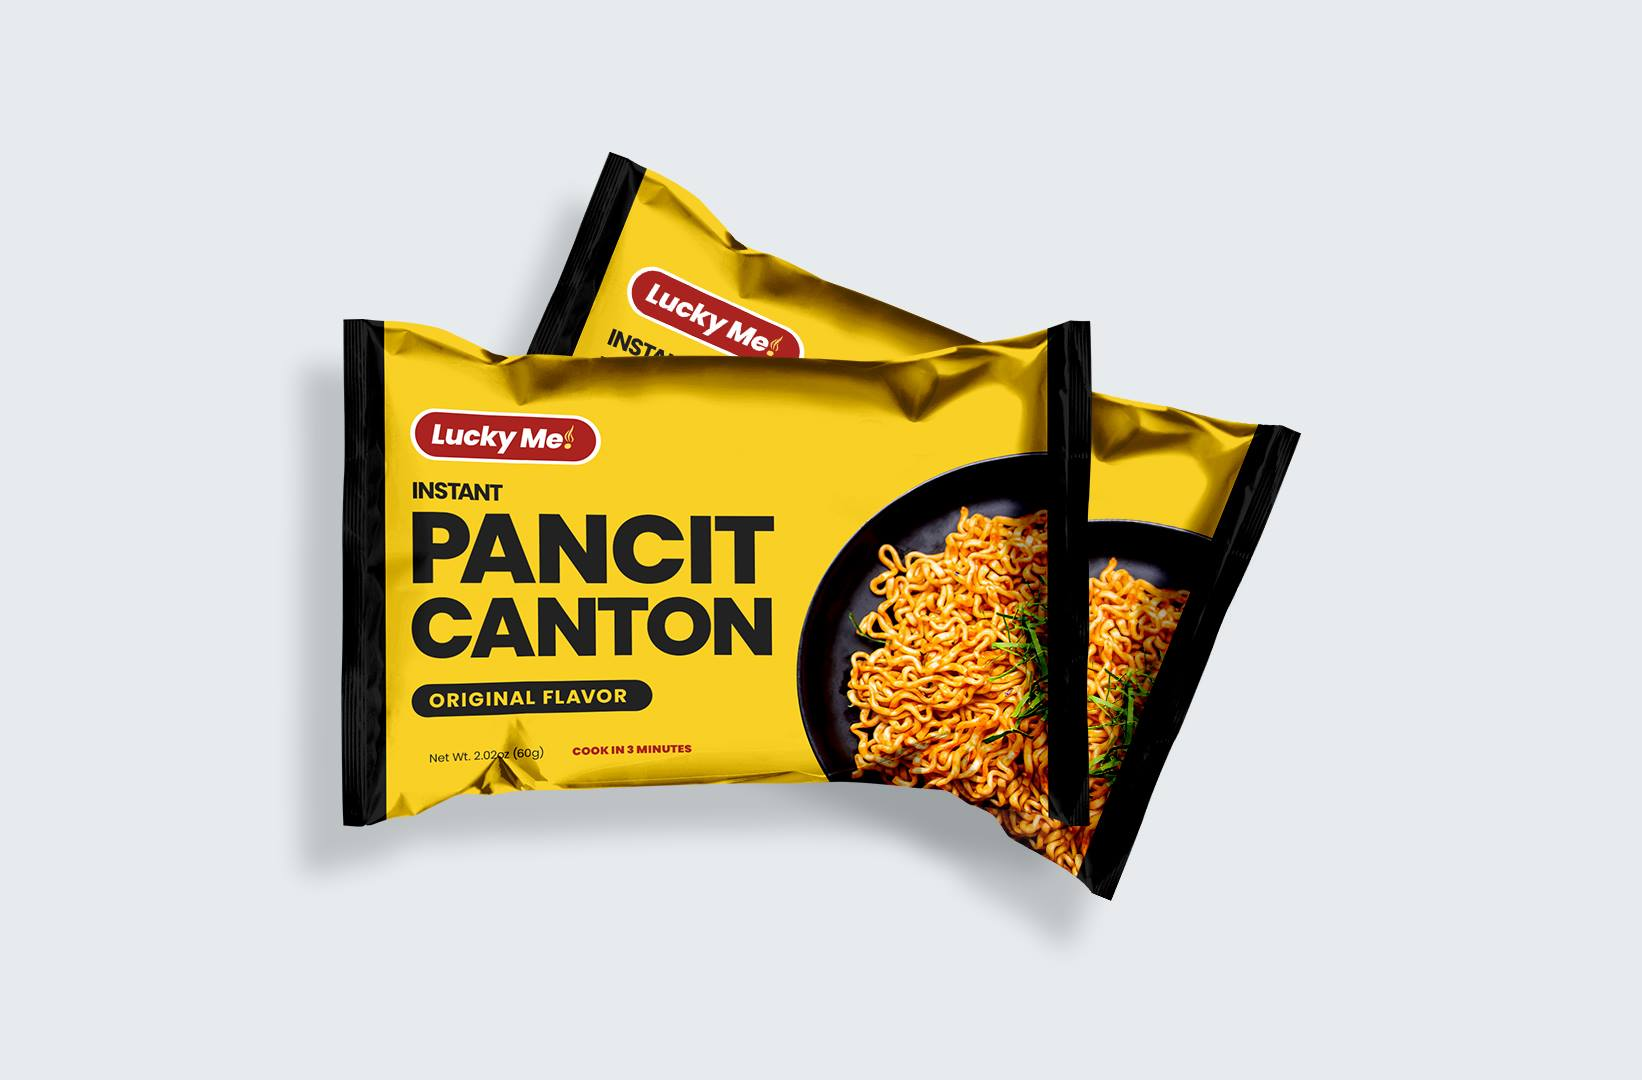 Pancit Canton packaging designs